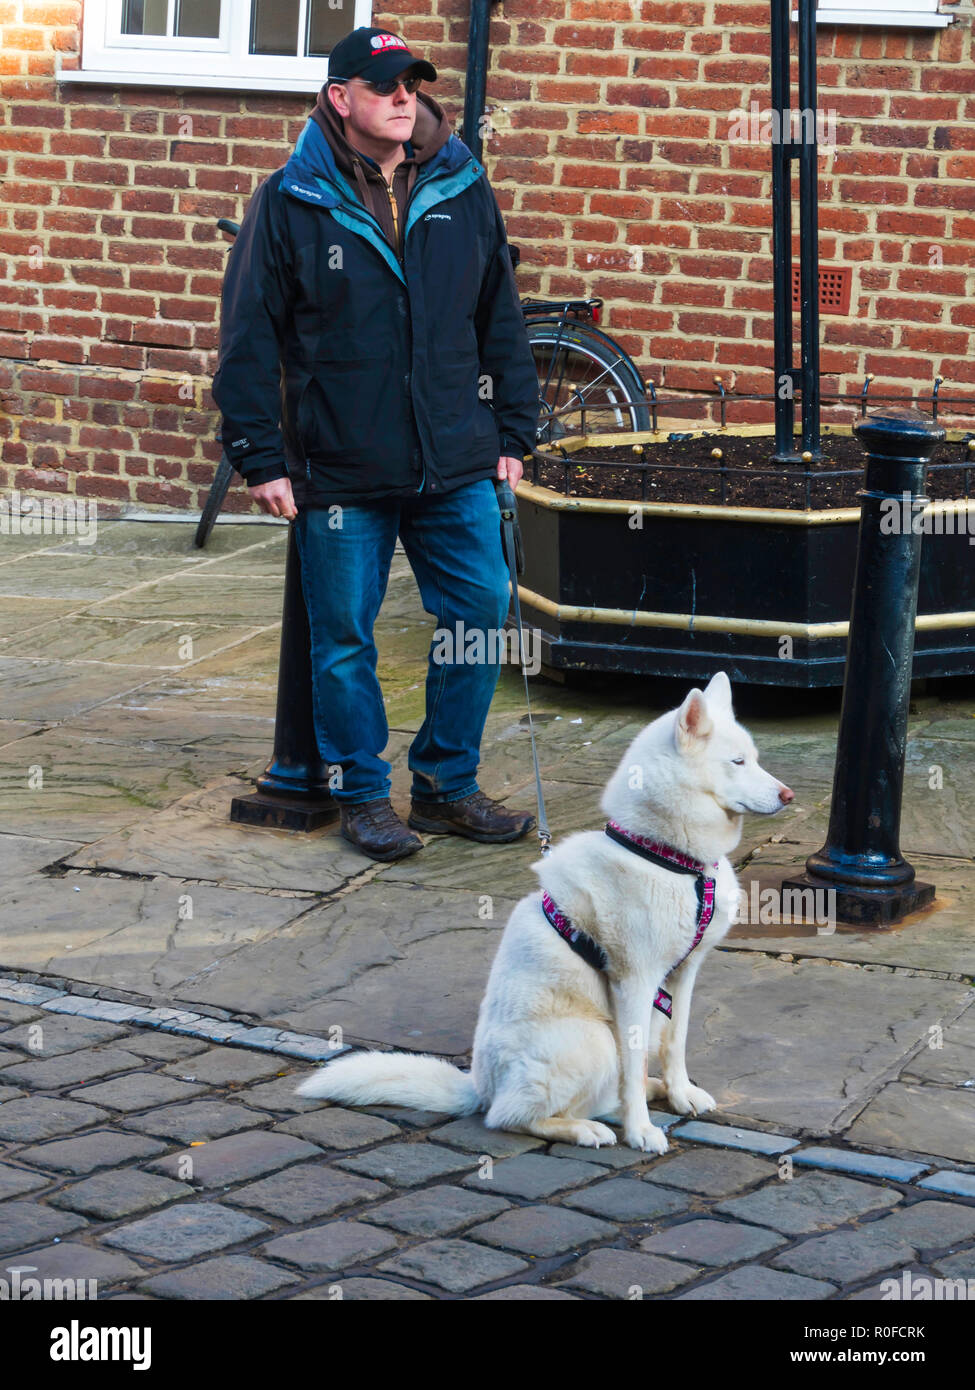 Un homme avec un chien Husky blanc bien élevés à l'extérieur en attente d'un centre commercial Banque D'Images